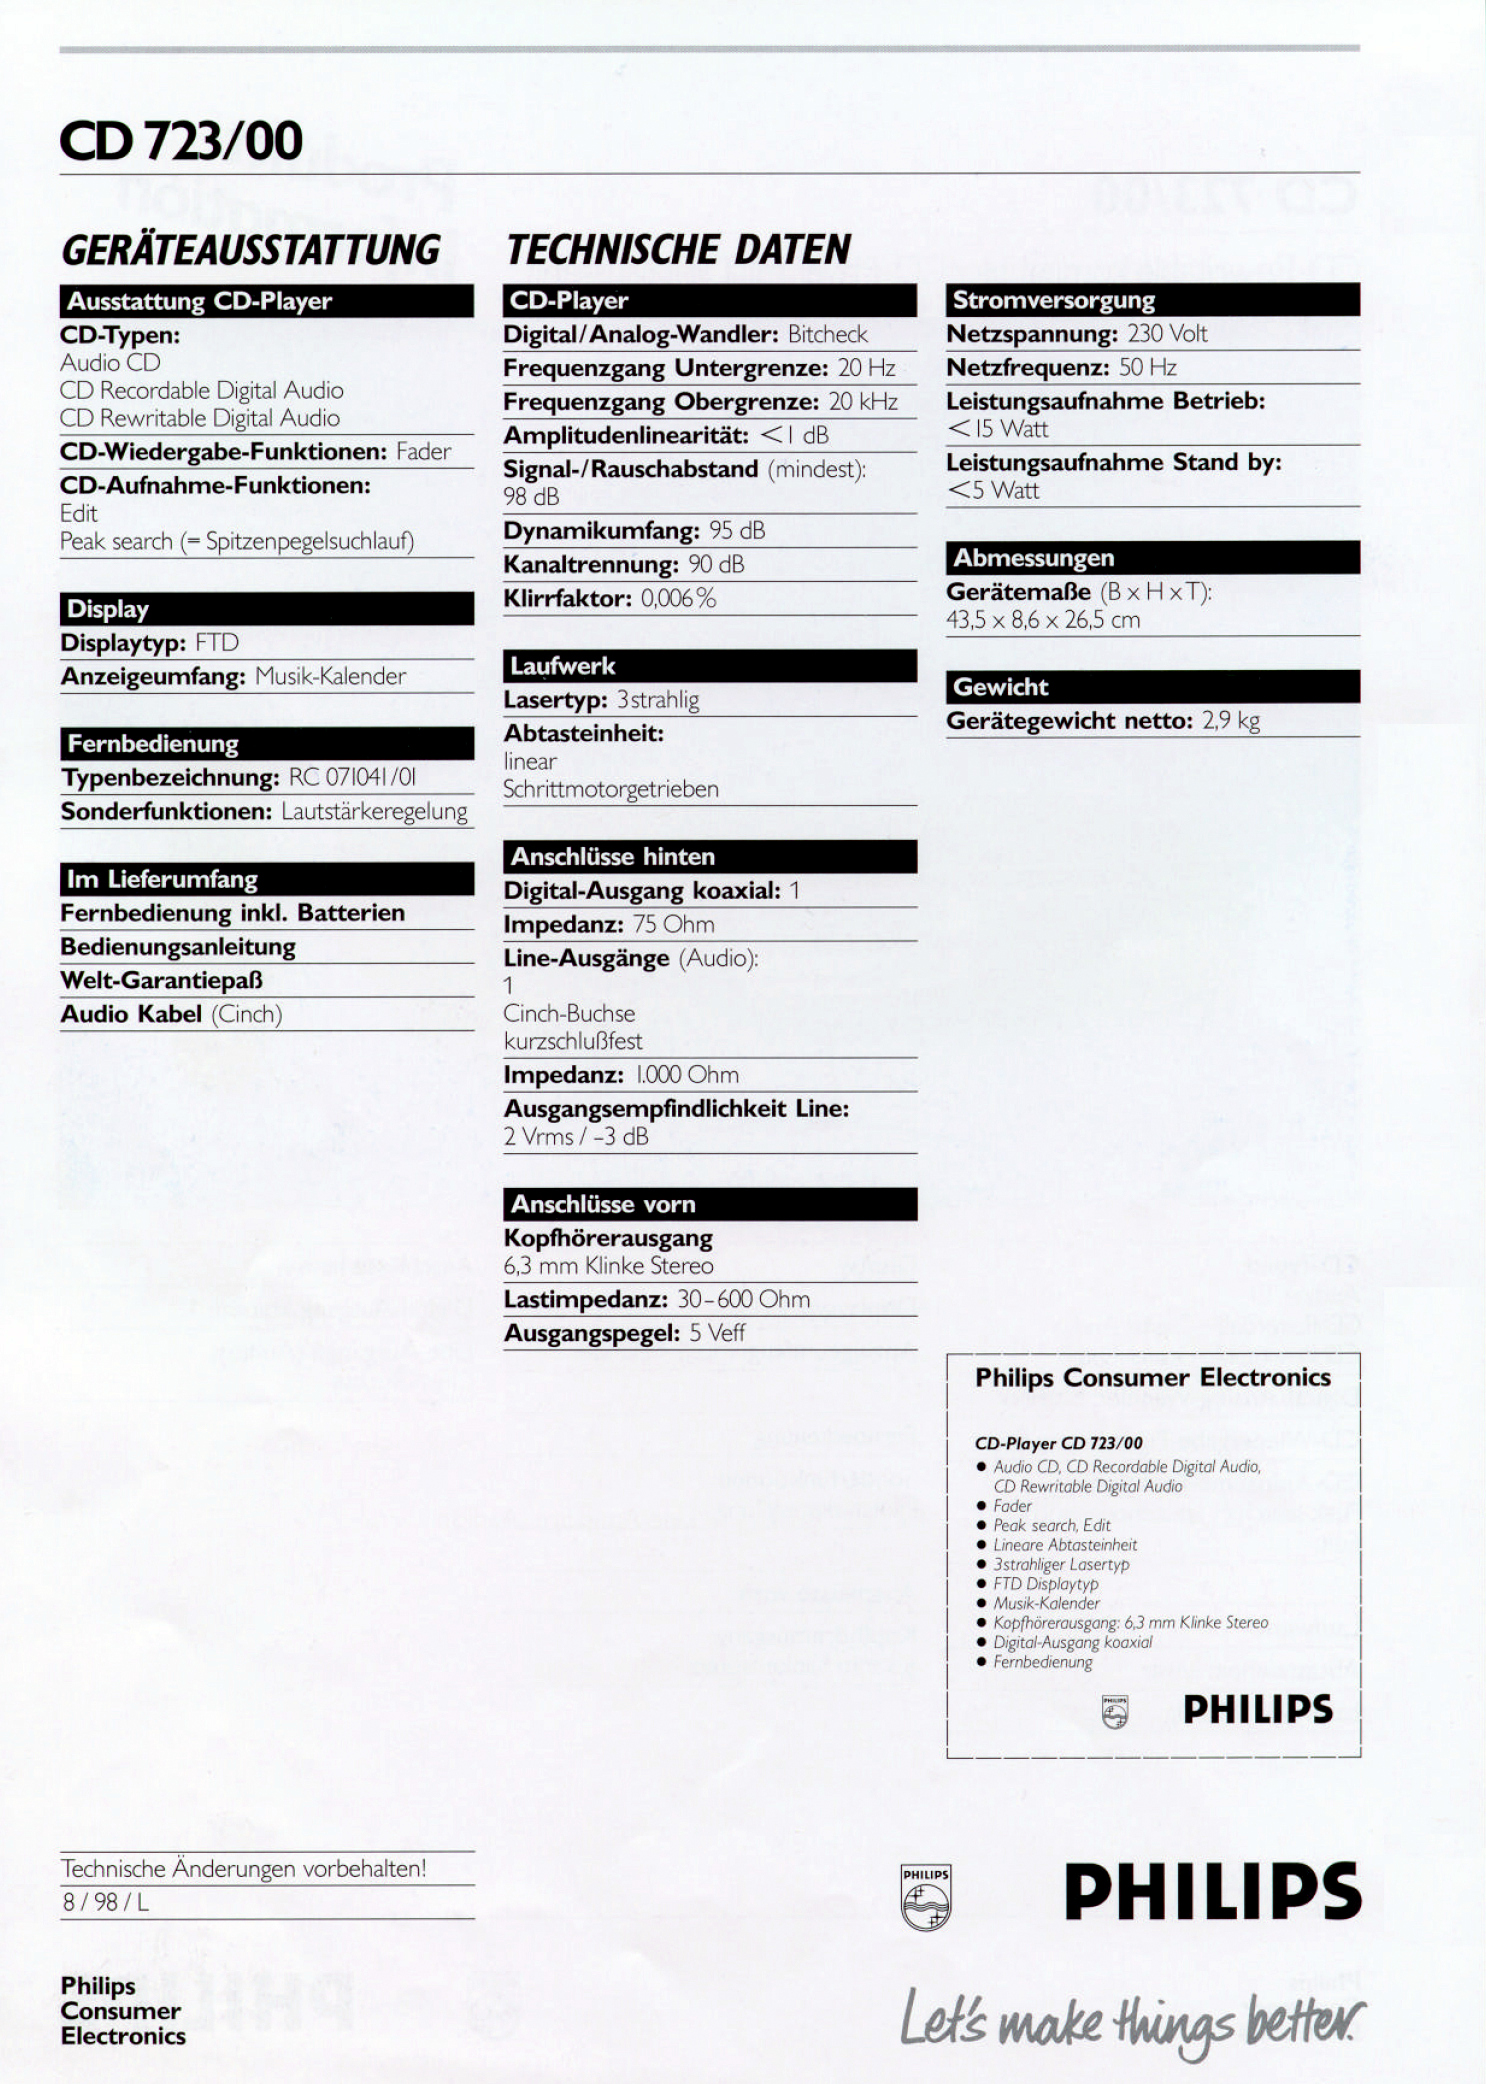 Philips CD-723-Prospekt-19991.jpg